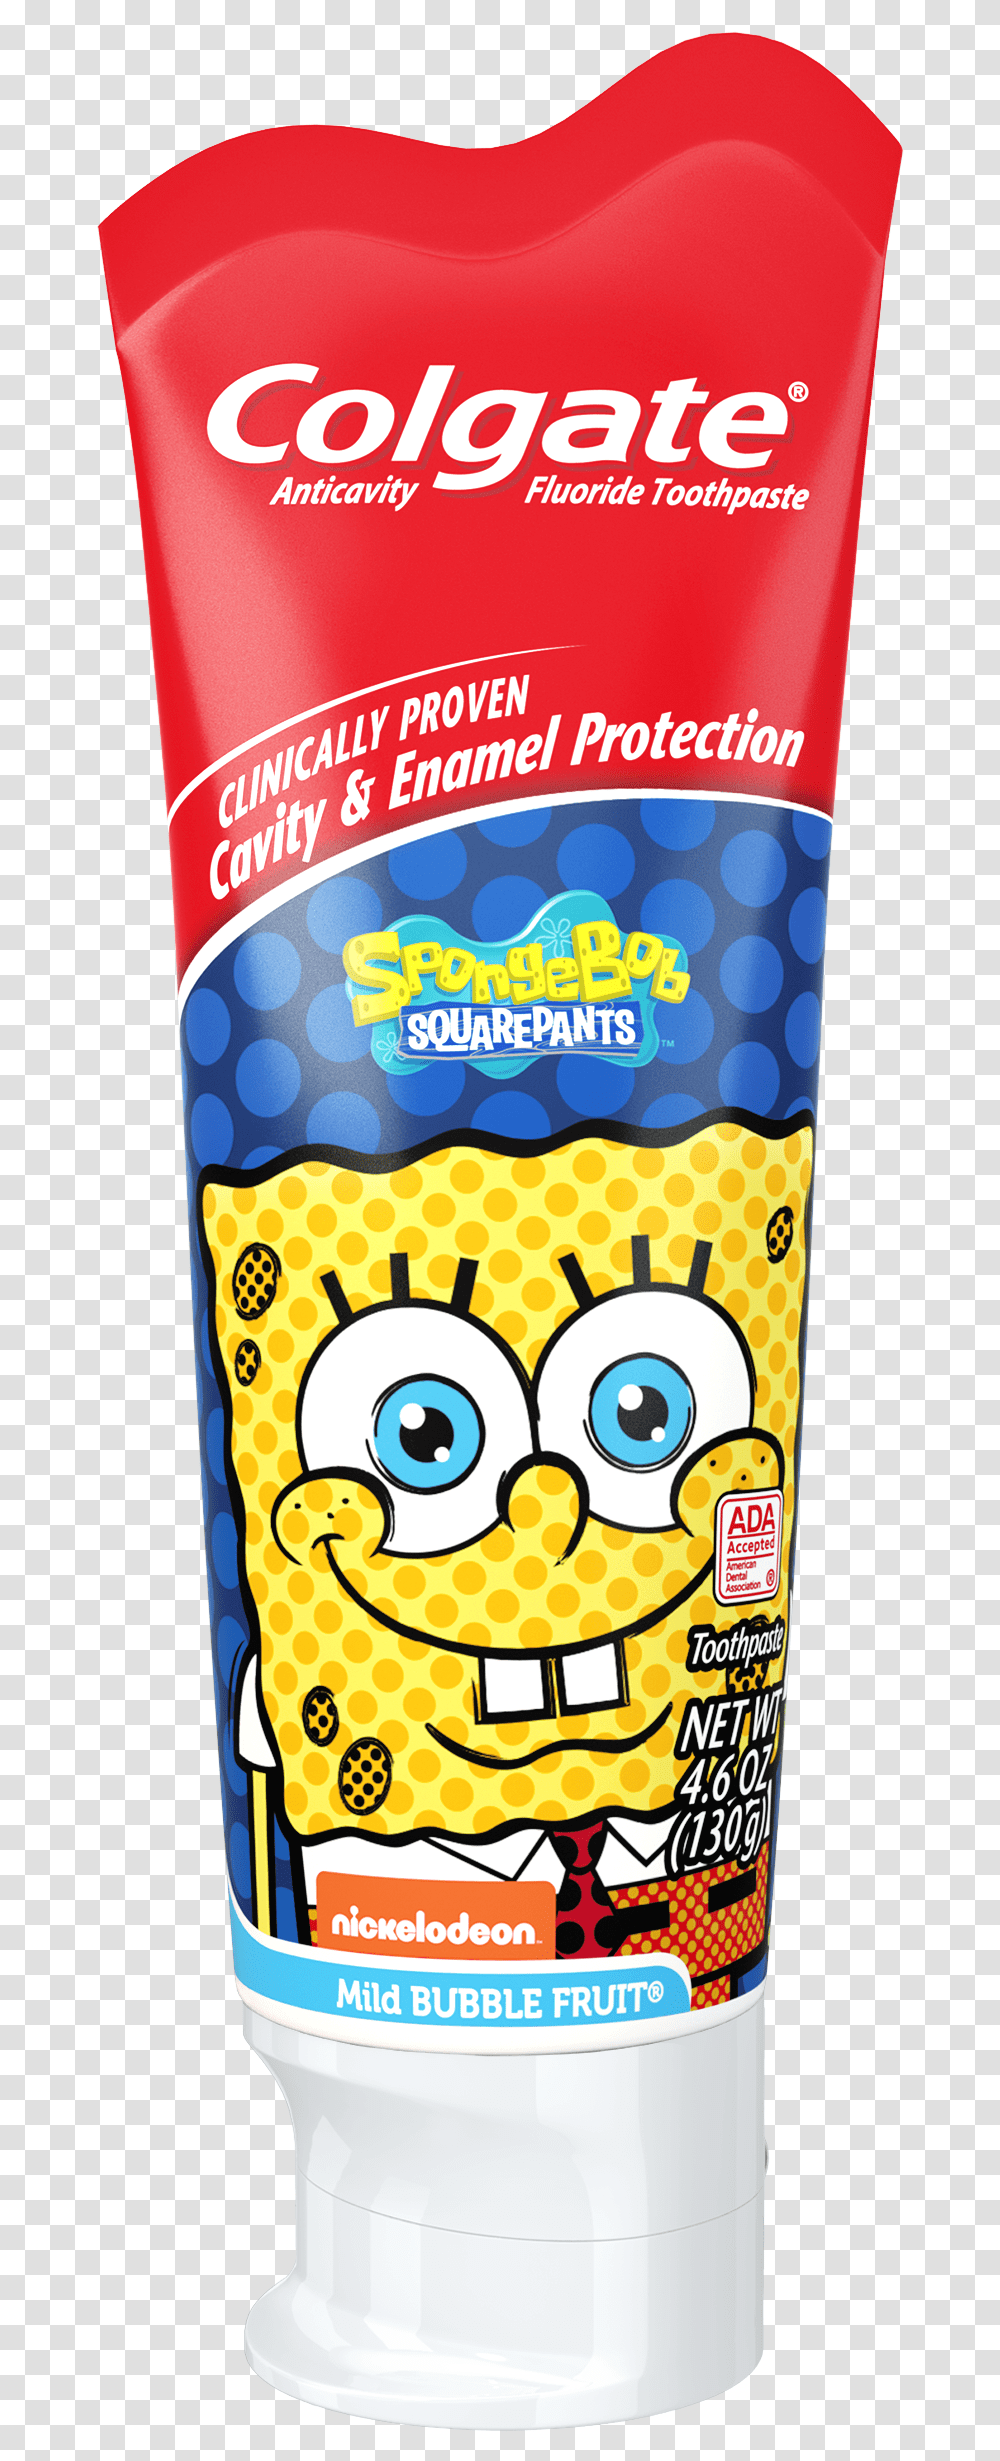 Colgate Spongebob Squarepants Fluoride Toothpaste Mild Colgate For Kids Spongebob, Beer, Beverage, Food, Label Transparent Png